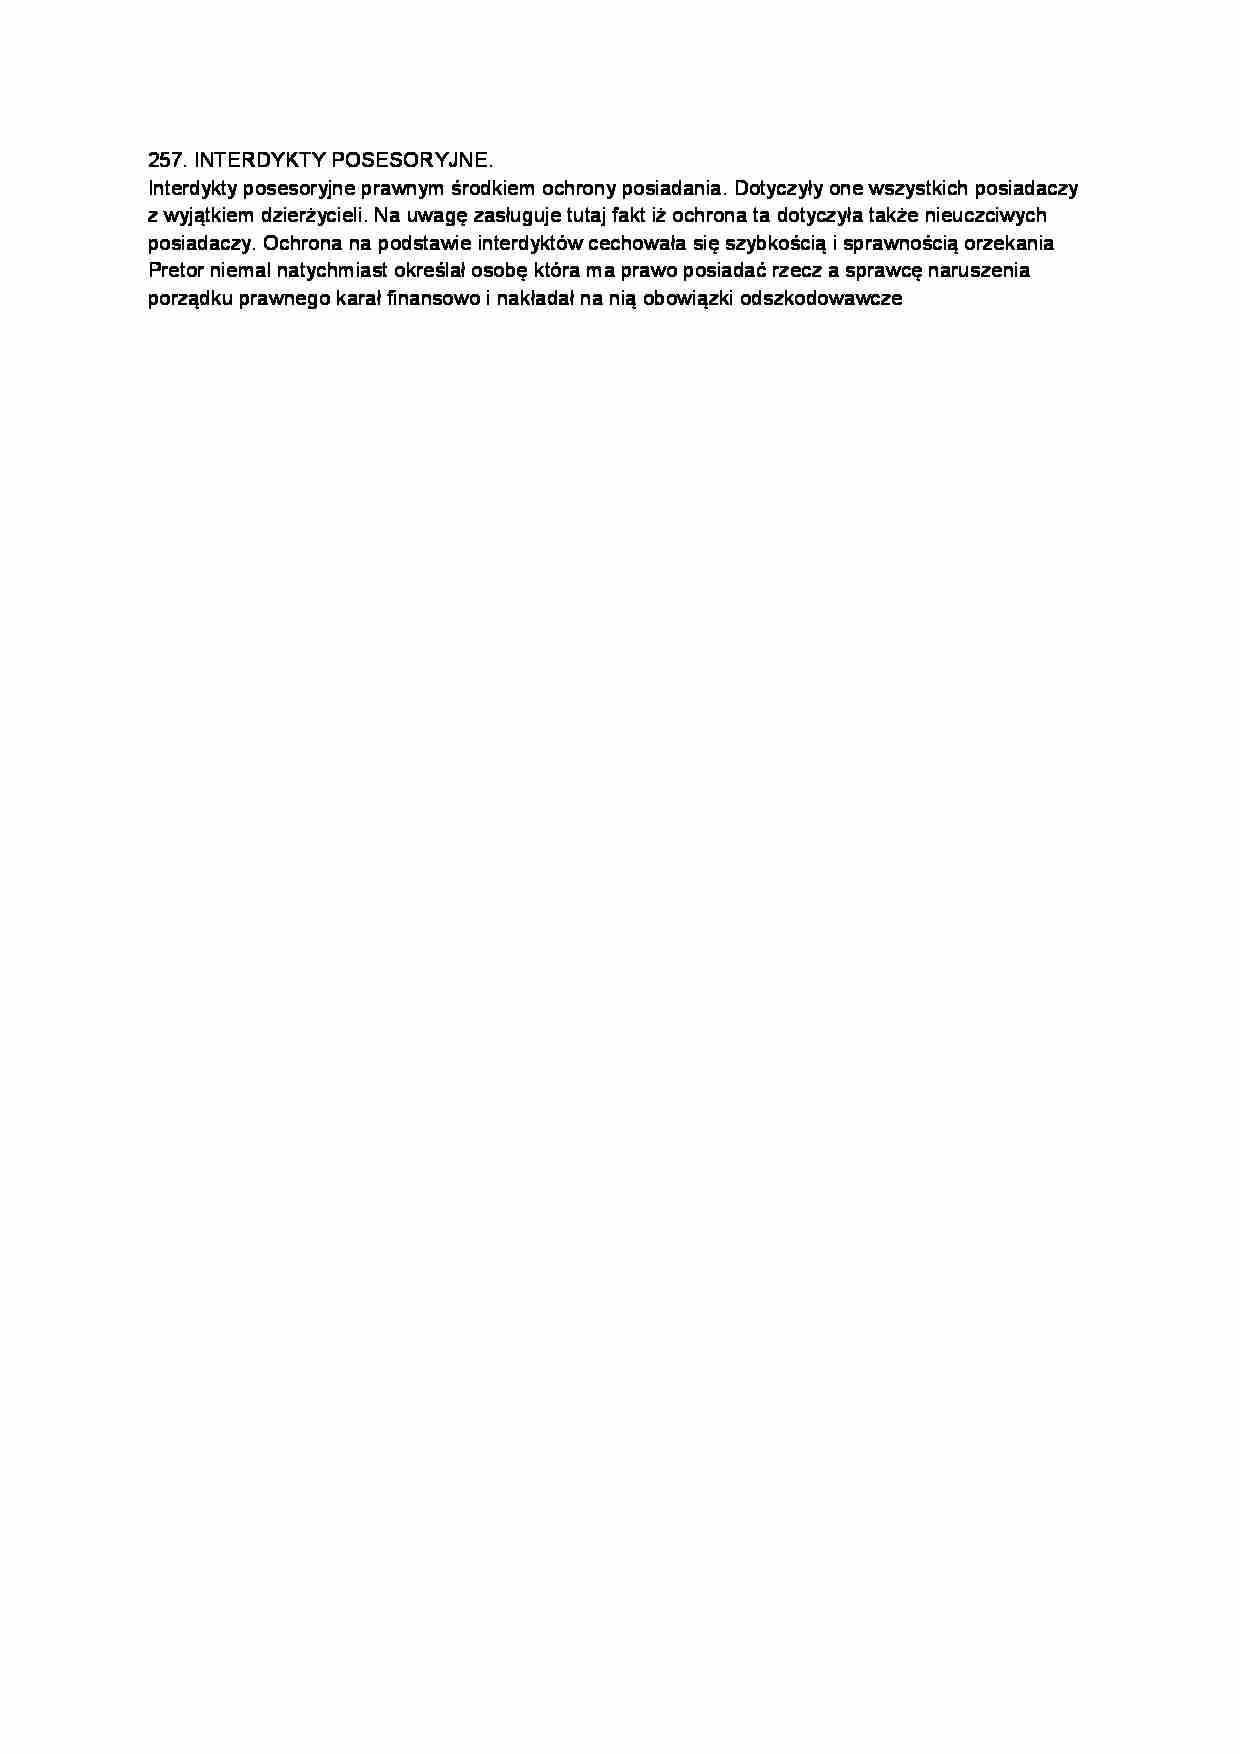 Interdykty posesoryjne-opracowanie - strona 1